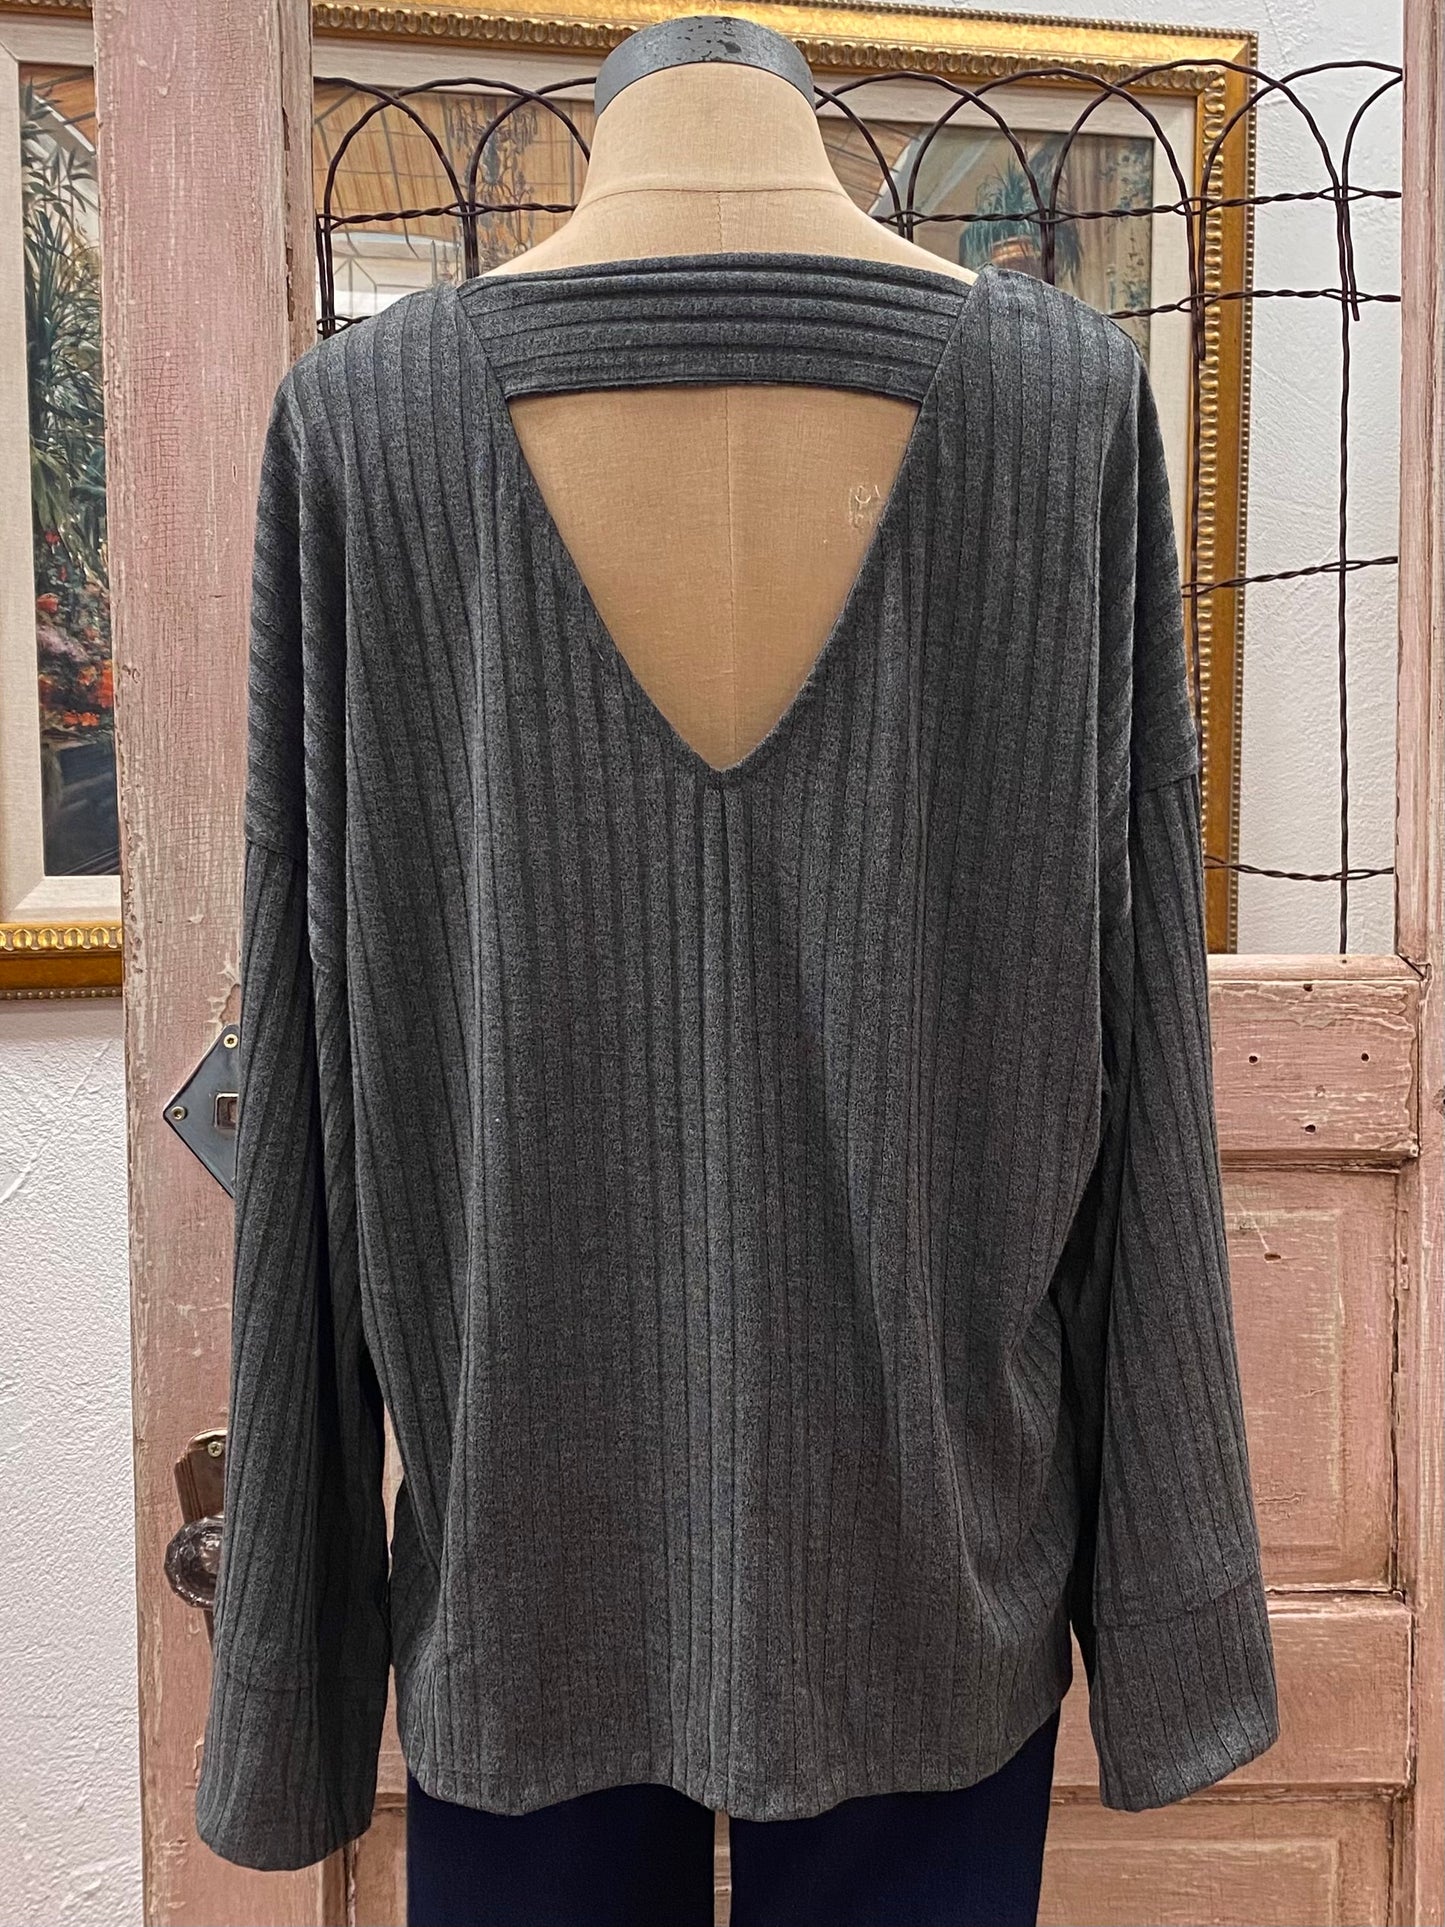 Love It Round Neckline Textured Sweater Top